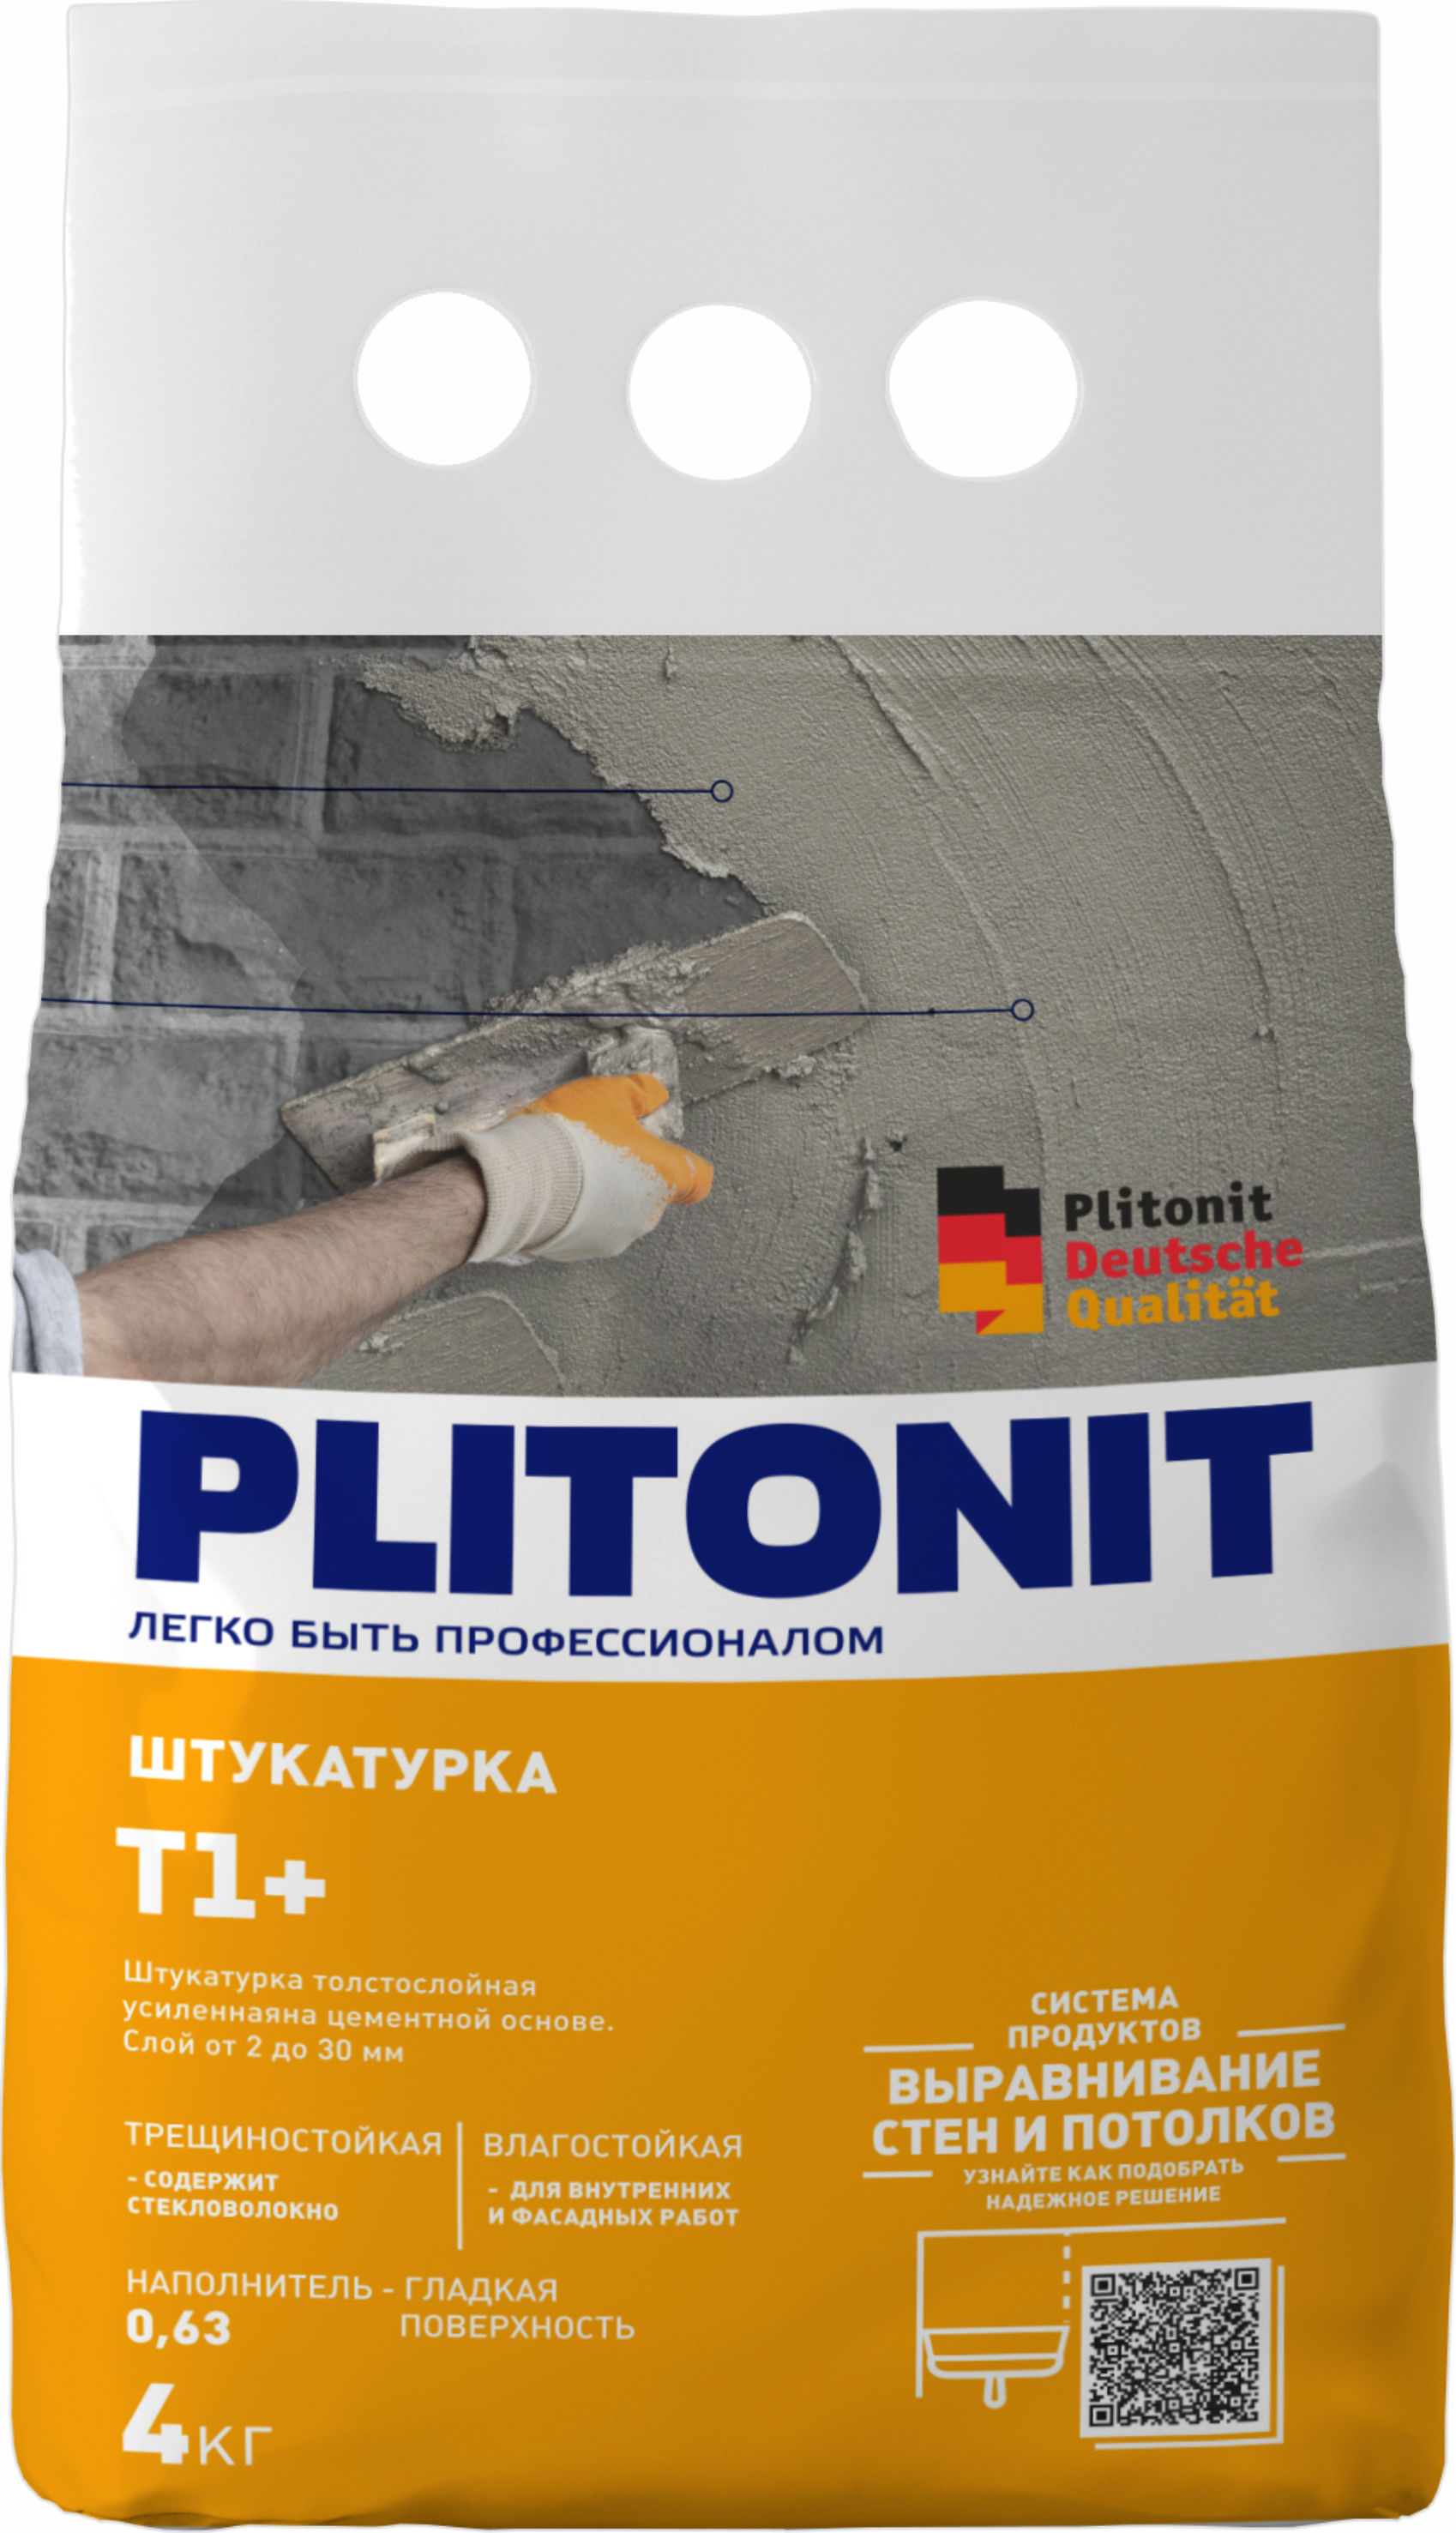 PLITONIT Т1+ -4 штукатурка 4 кг  (168шт/подд.)